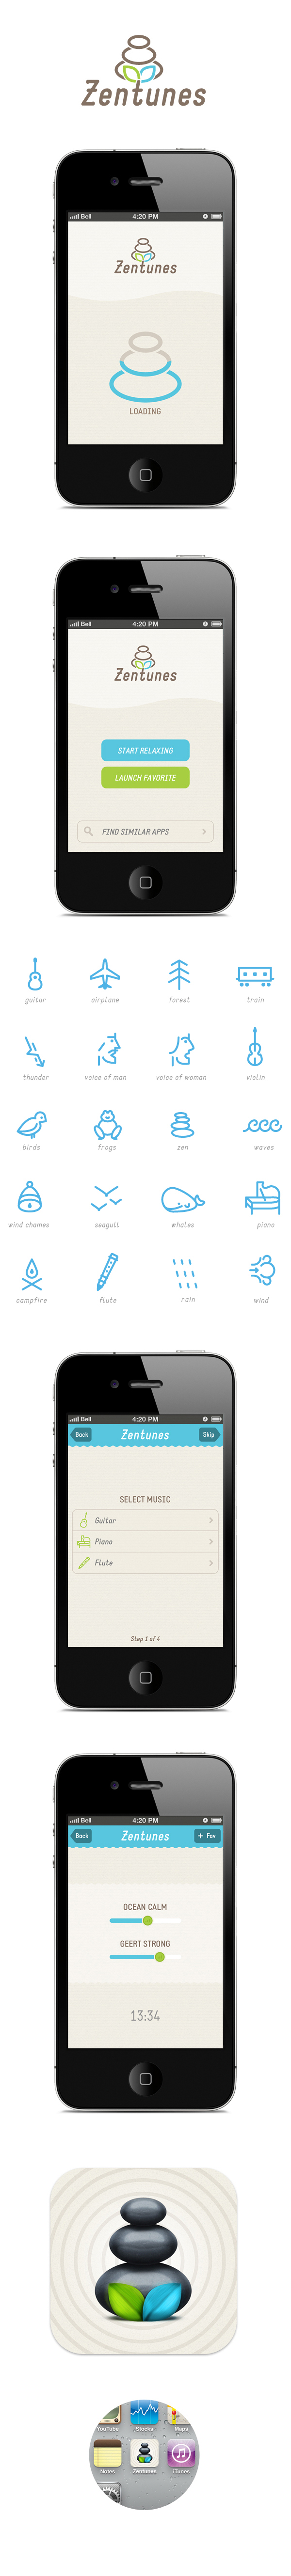 zen app iphone icons